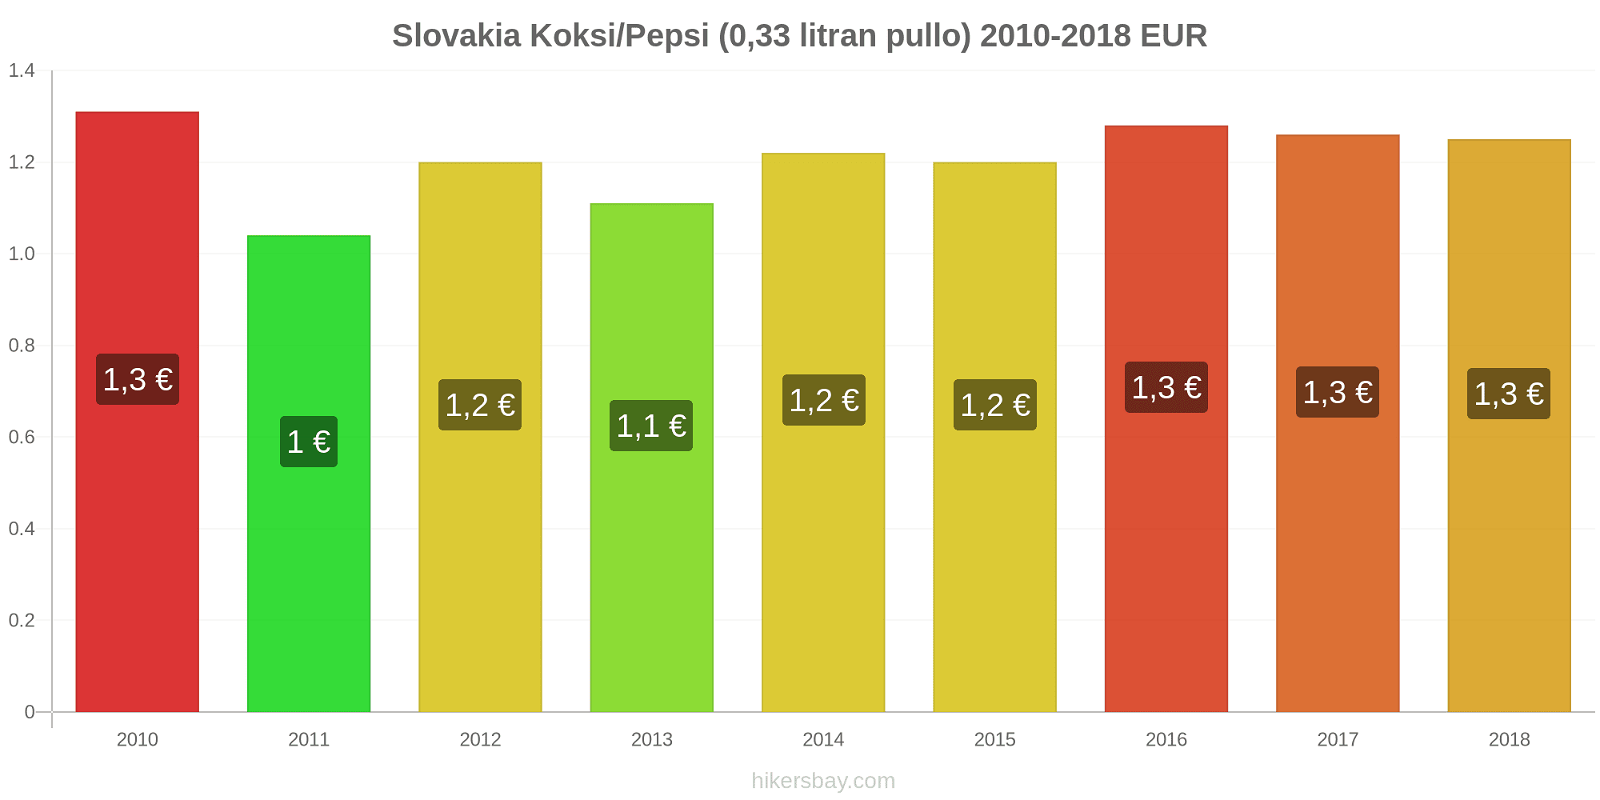 Slovakia hintojen muutokset Koksi/Pepsi (0,33 litran pullo) hikersbay.com